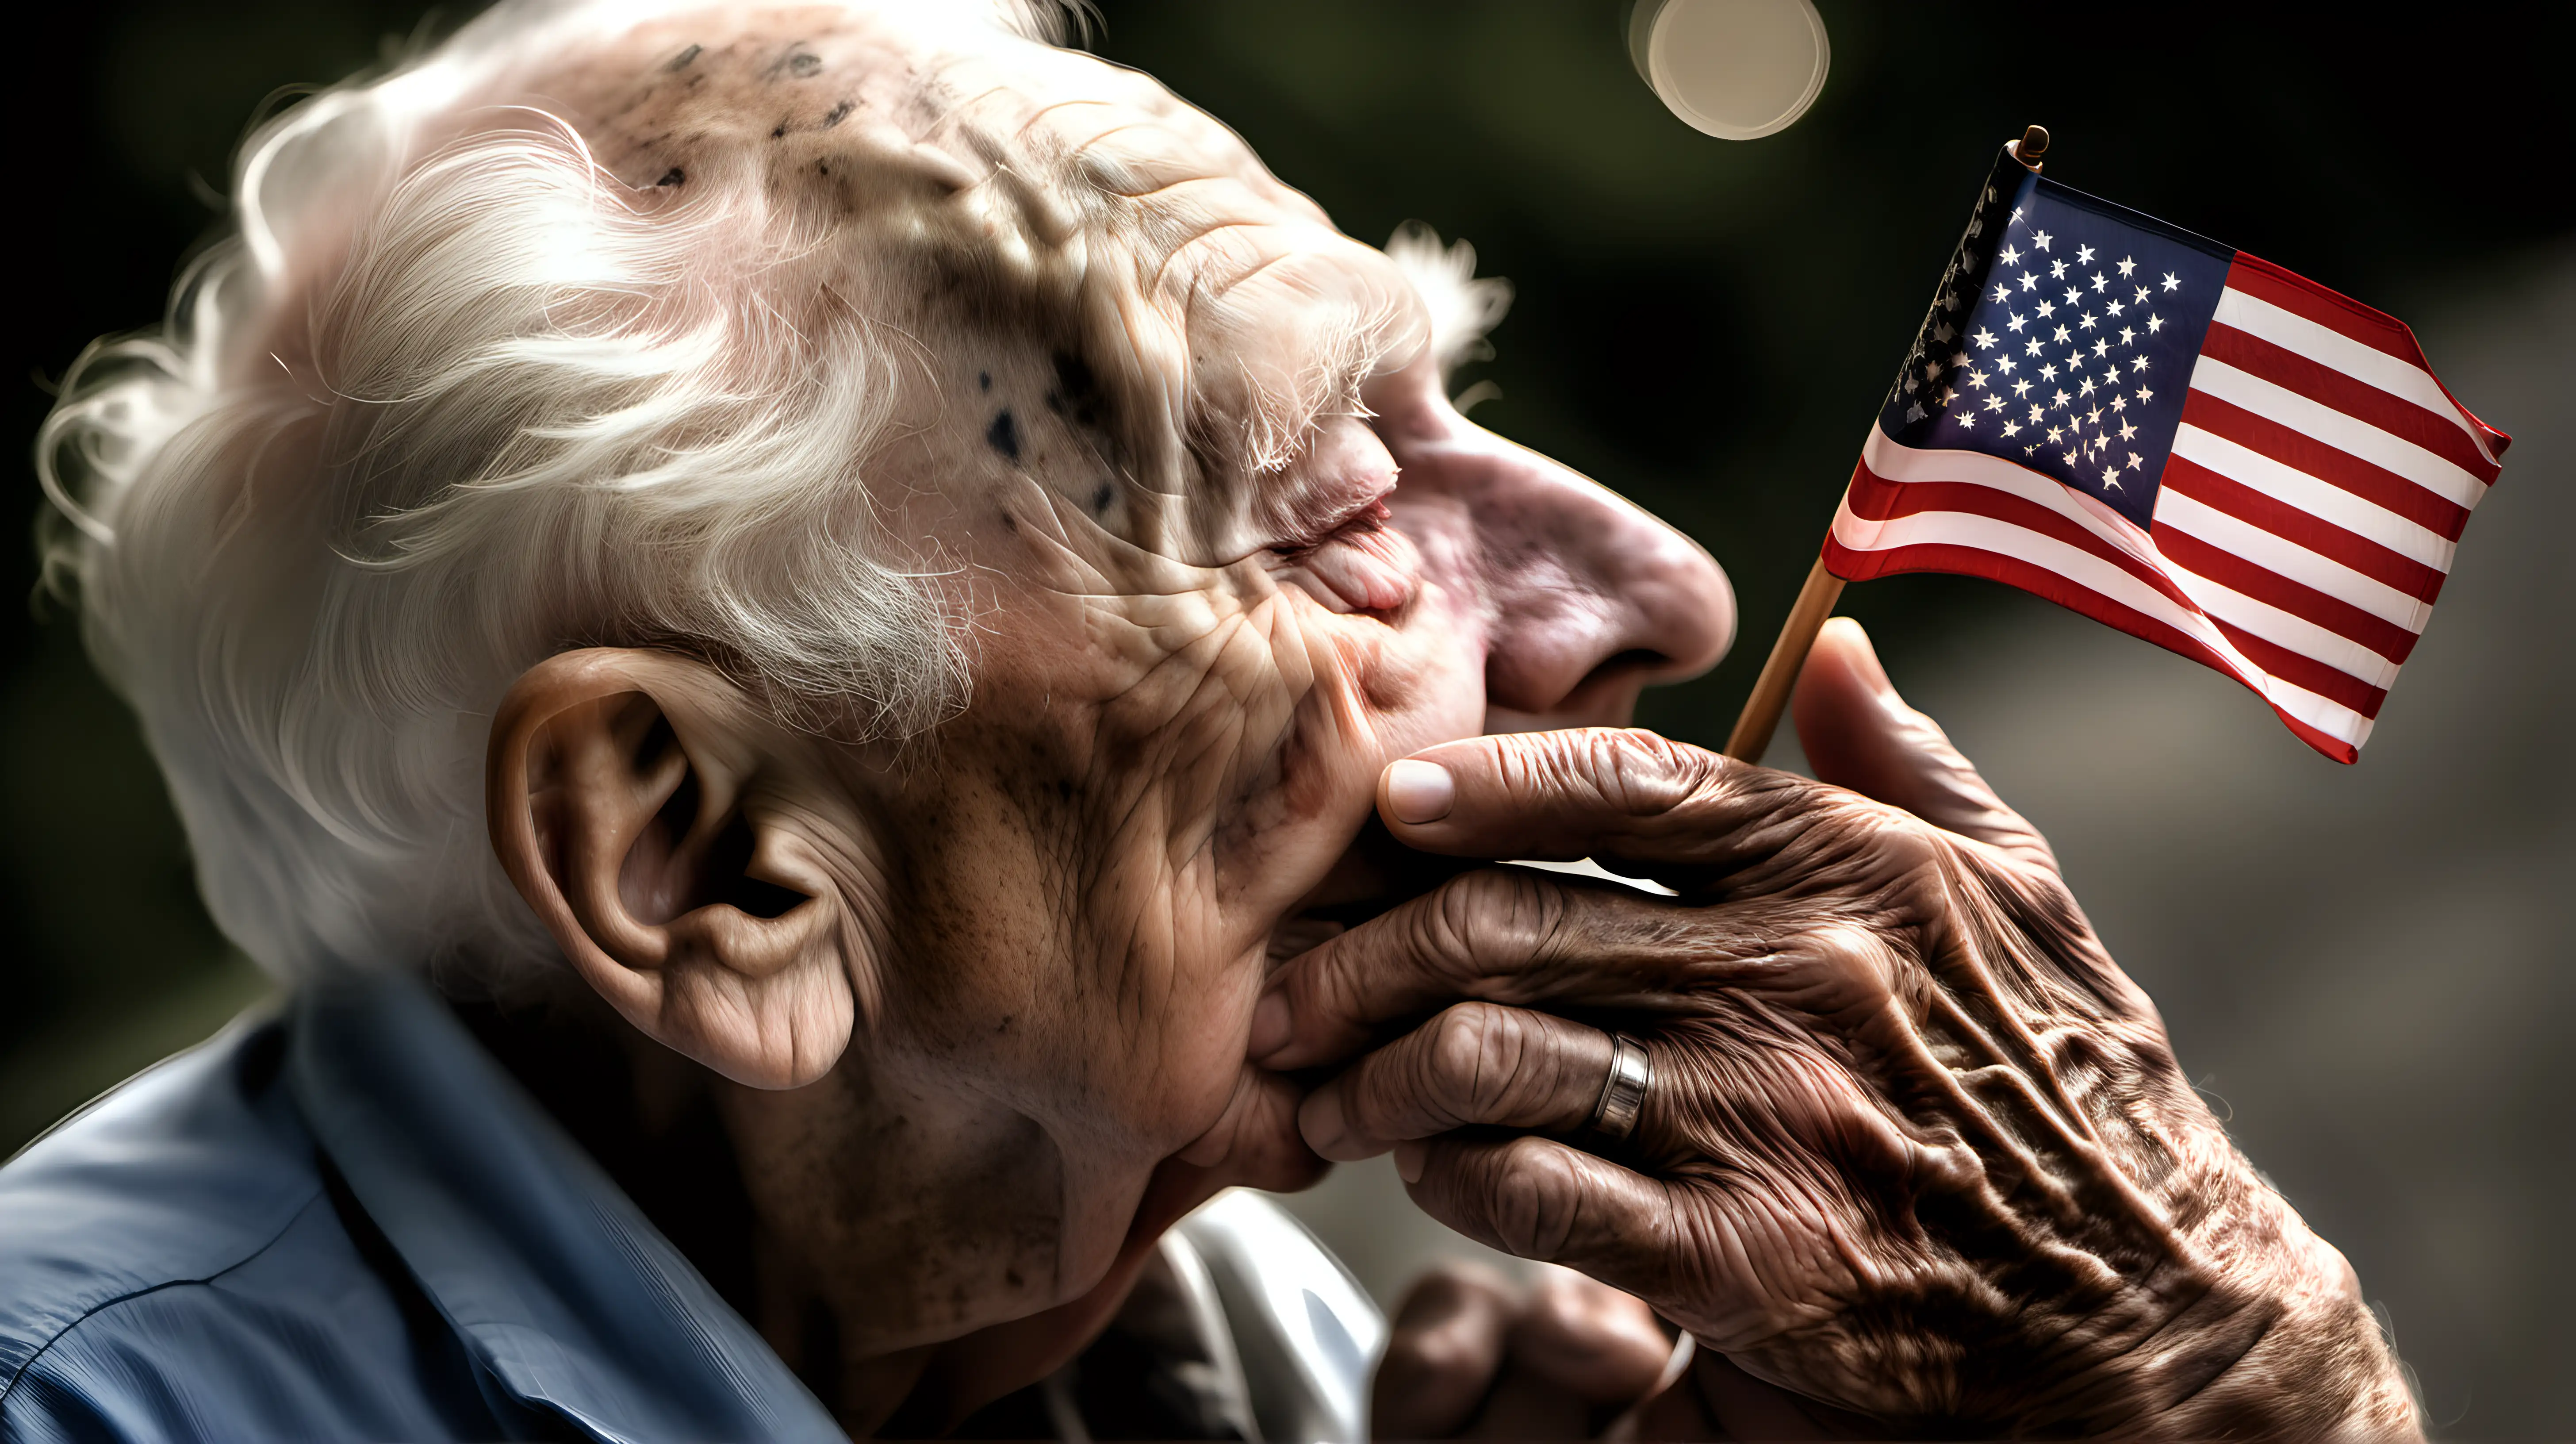 Elderly Veteran Tenderly Kisses American Flag